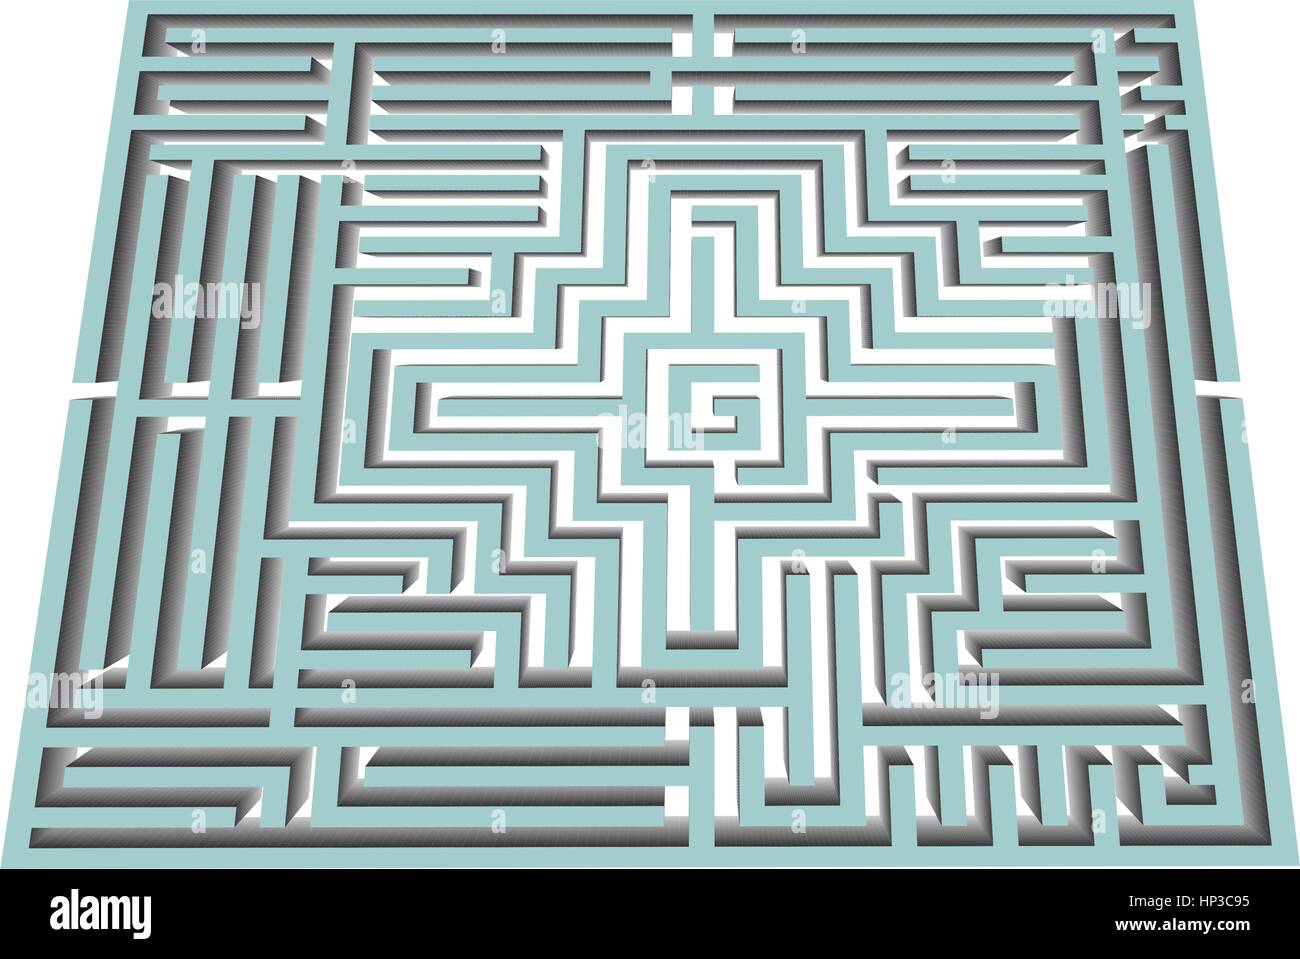 Vector illustration noir et blanc d'un labyrinthe et du labyrinthe Illustration de Vecteur